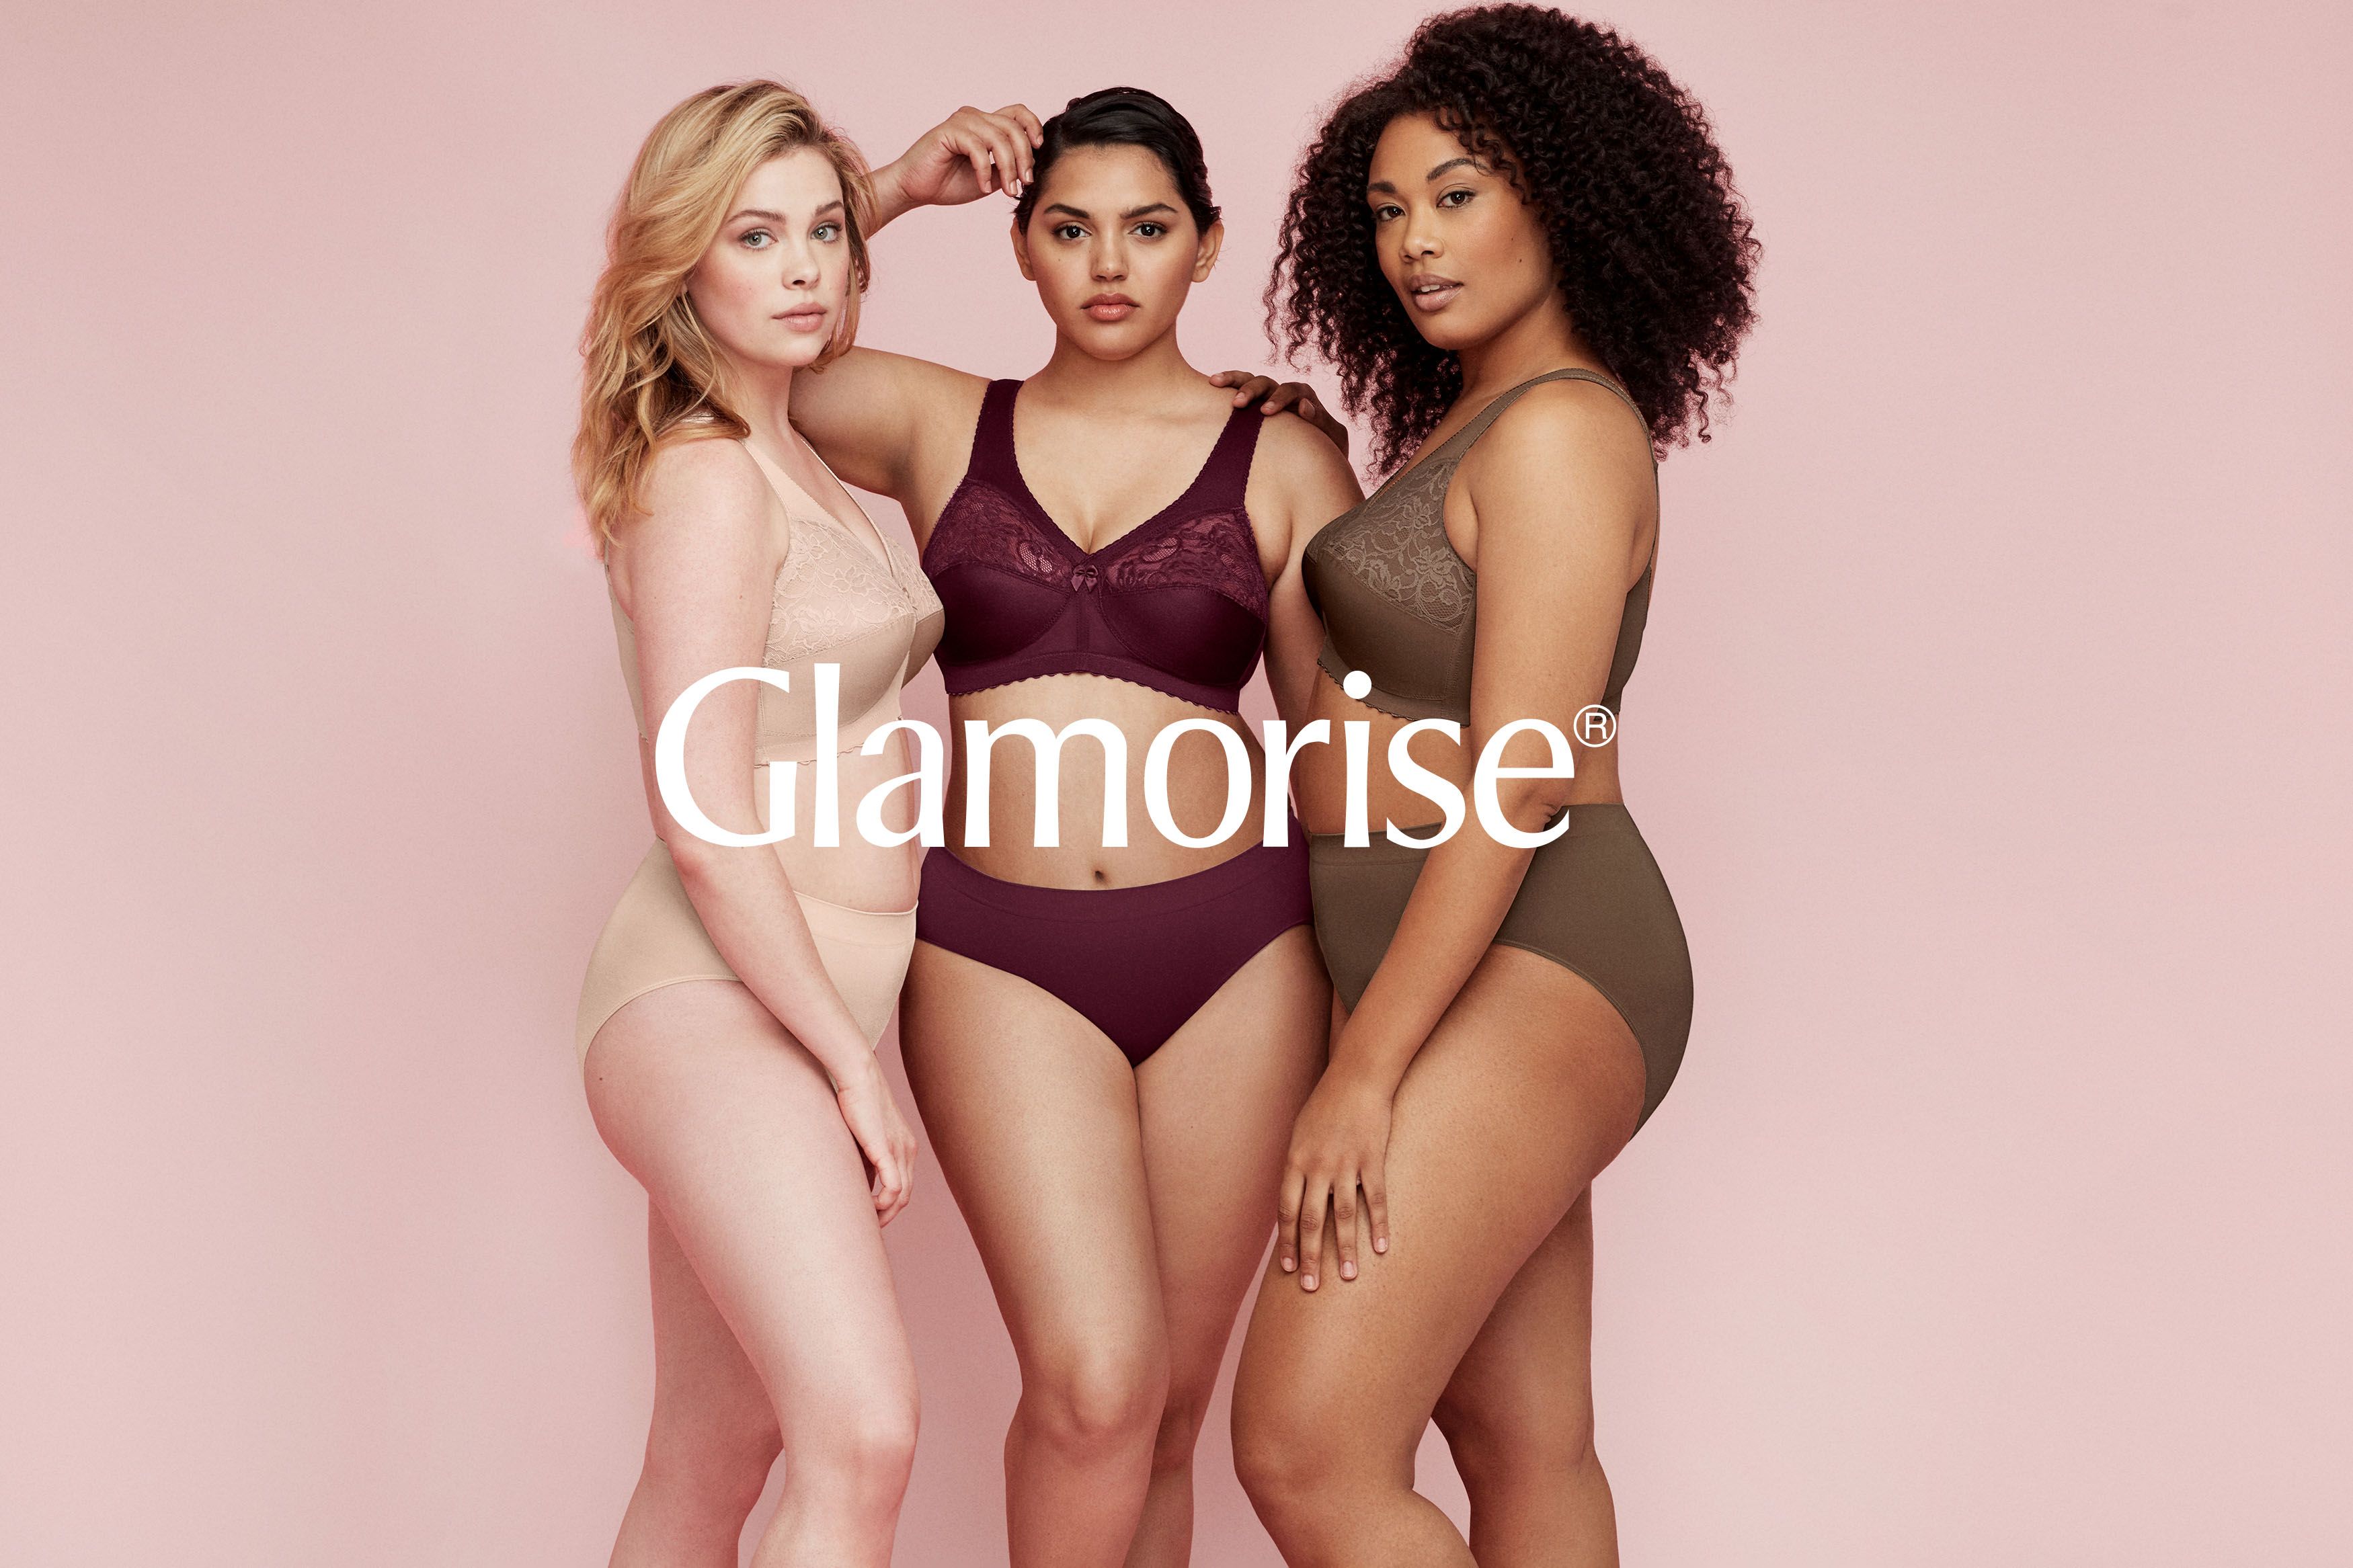 Glamorise Ad Campaign 2020